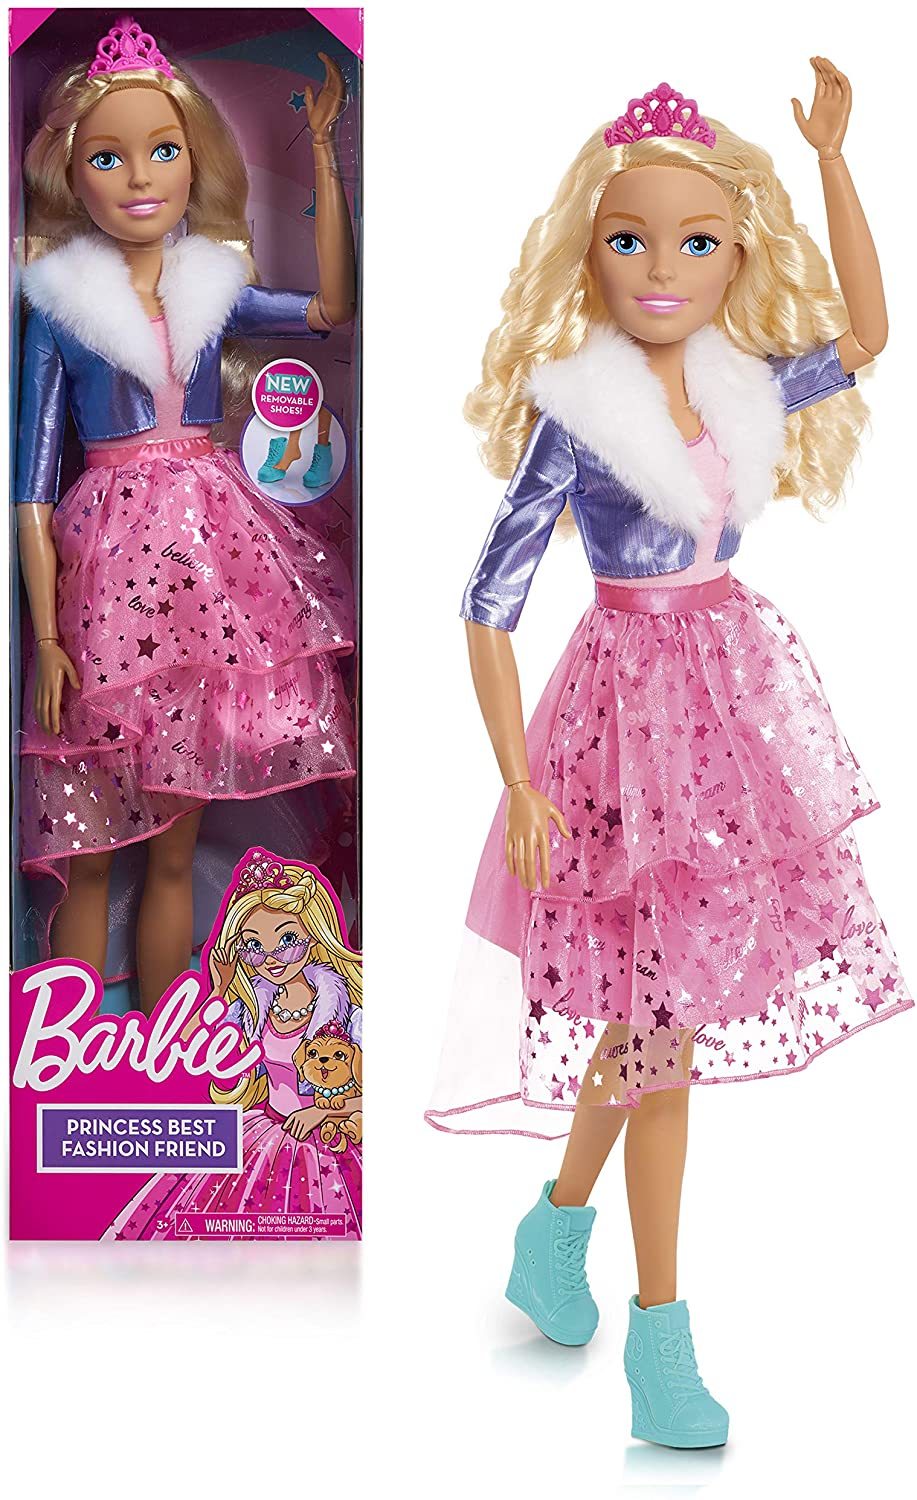 Default Title/mattel|default Title - Jp barbie best fashion friend princess adventure bar03101 - doll (28 